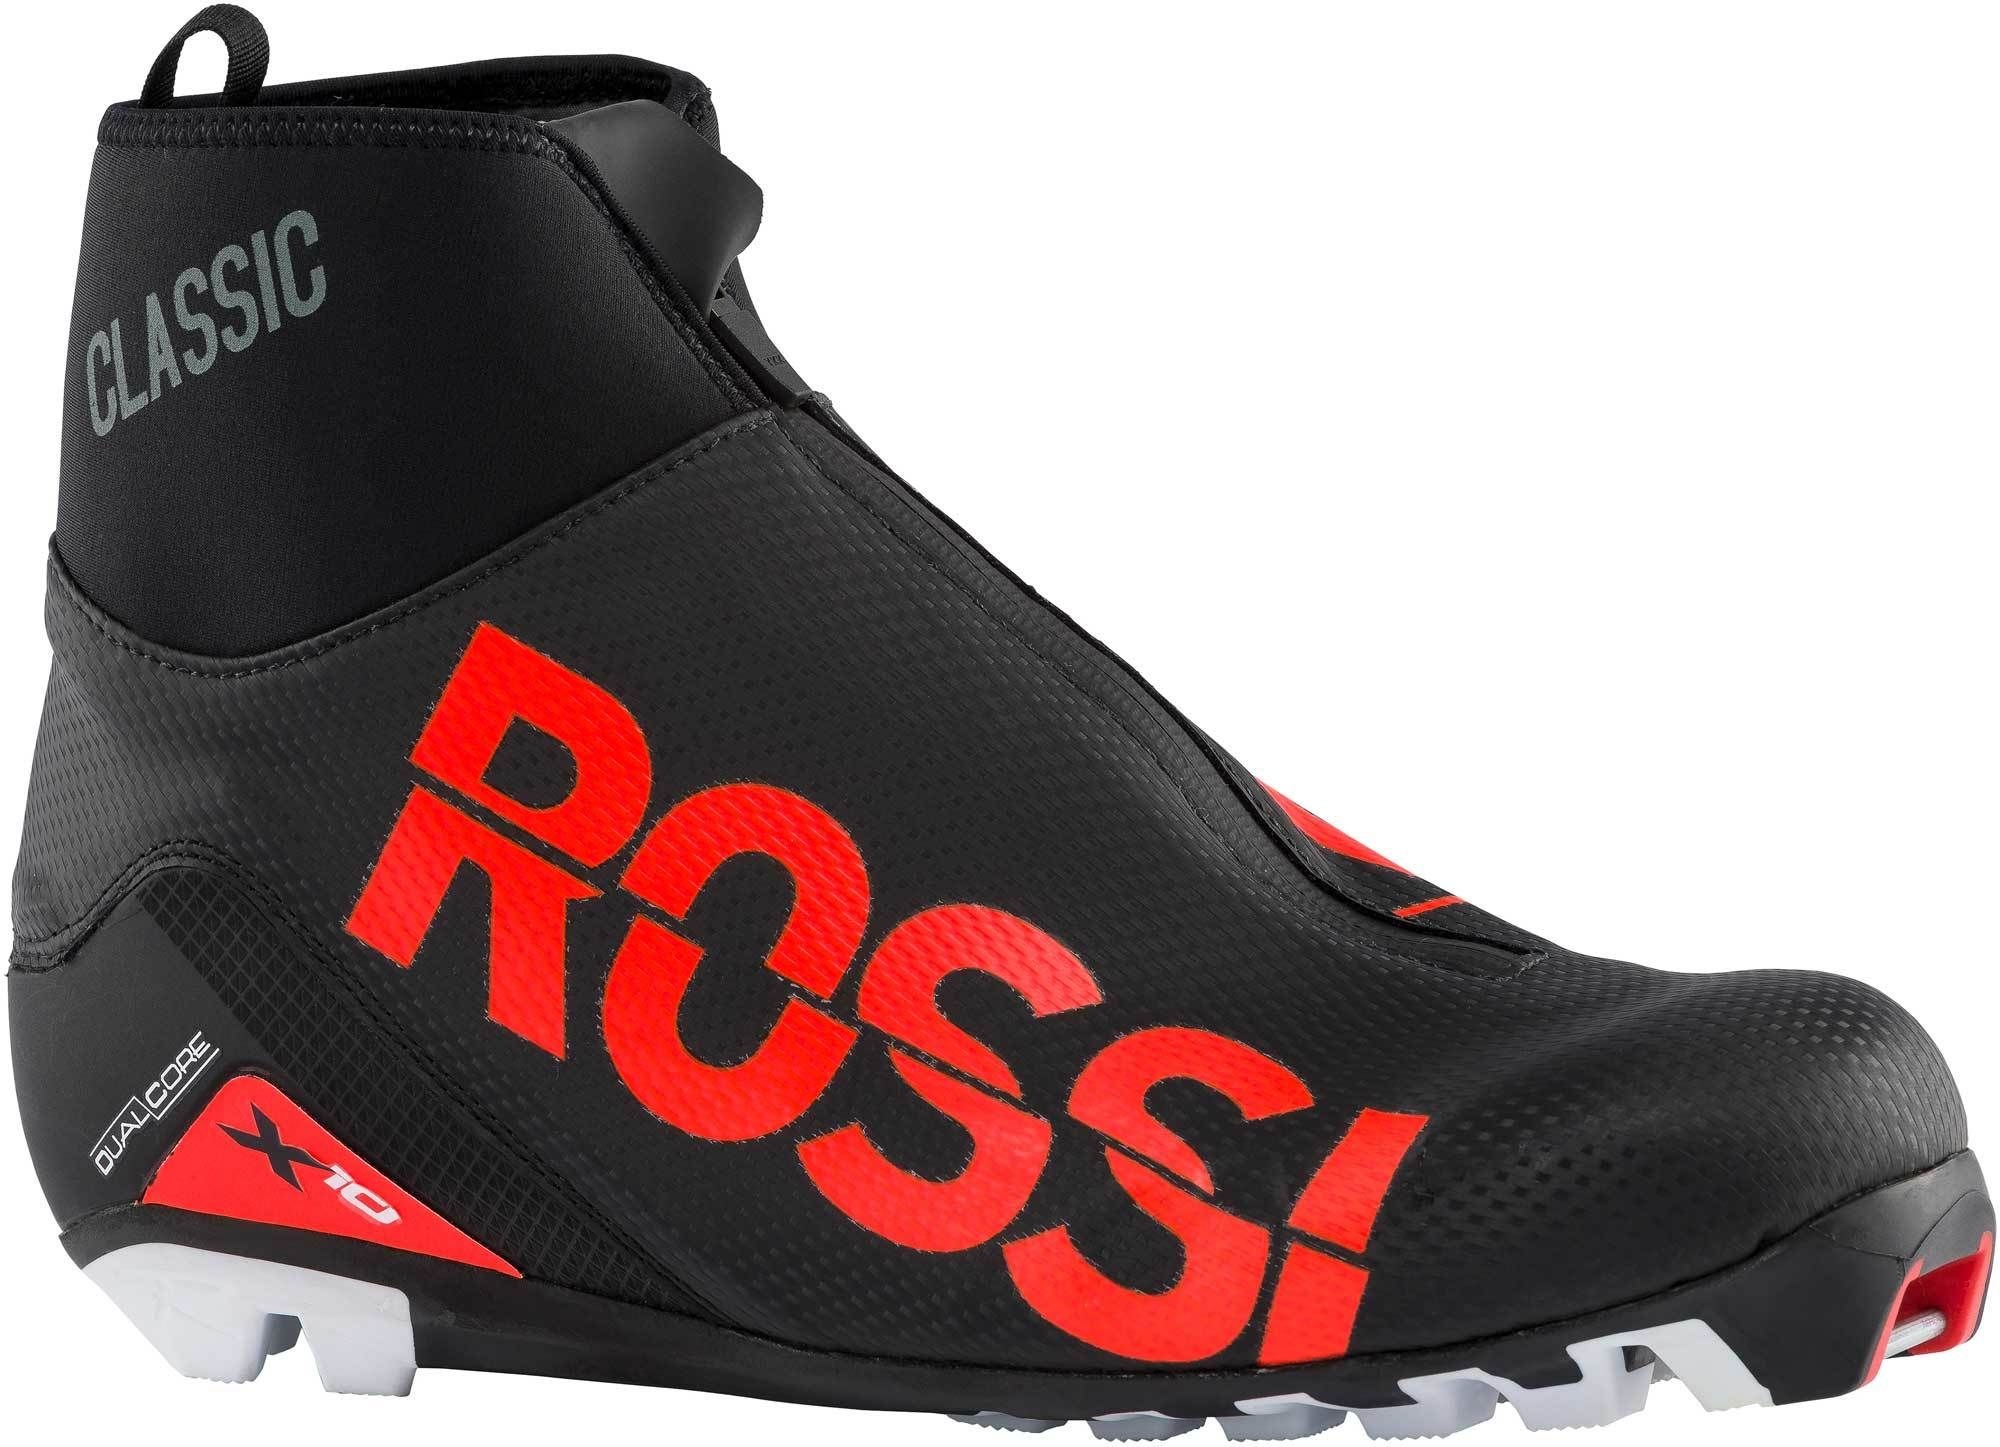 Rossignol X-10 Classic Boot